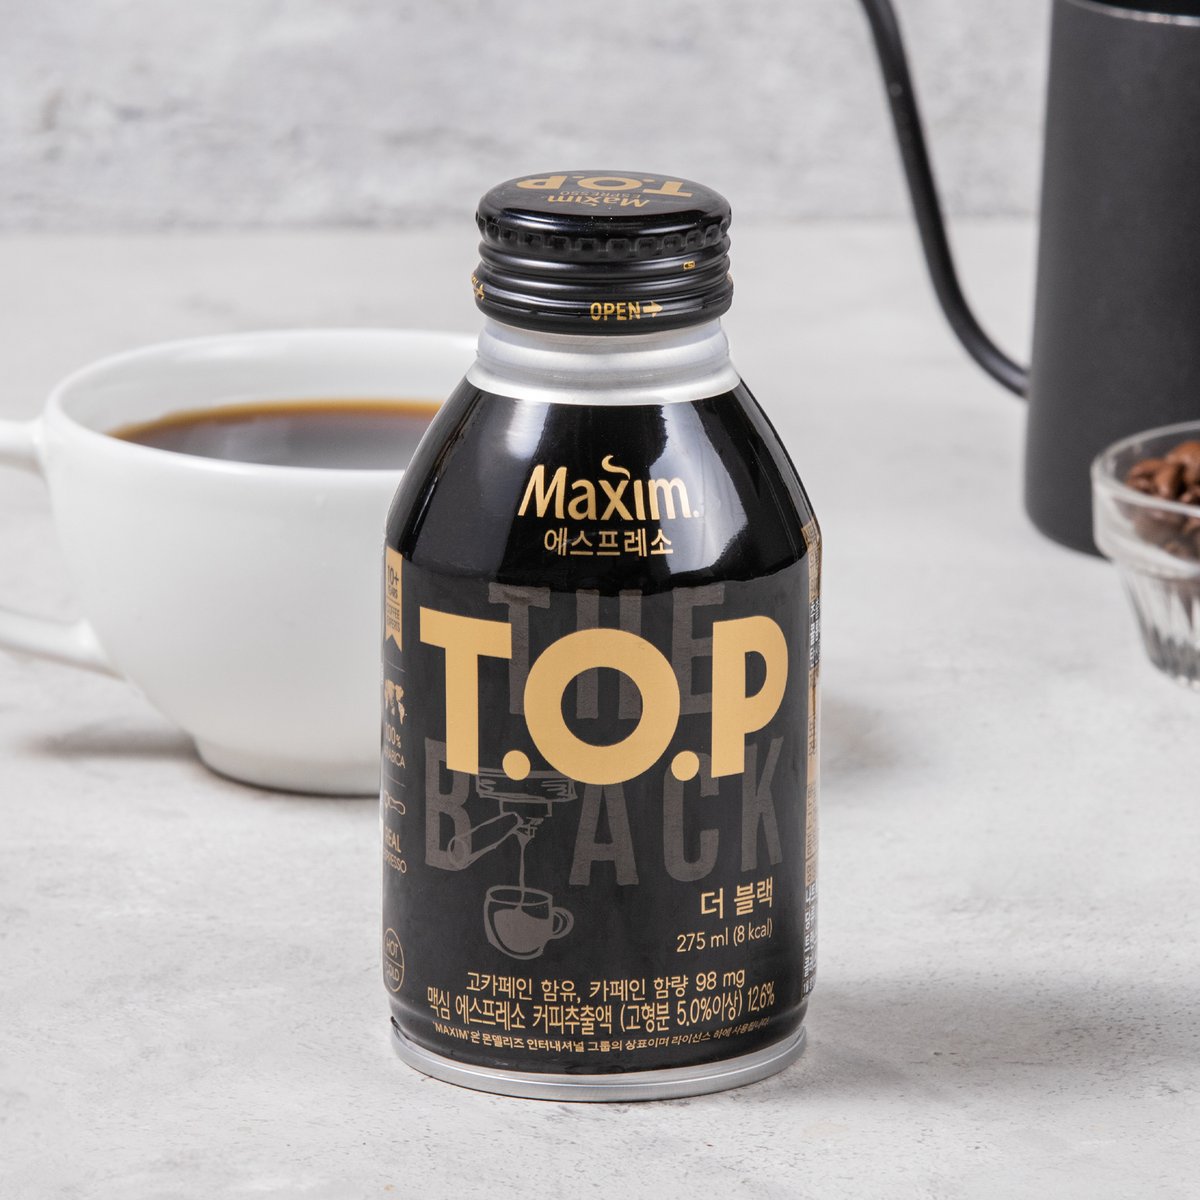 Maxim麦馨韩国咖啡TOP拿铁即饮黑咖啡赫宰爱的甜美式进口饮料瓶装 - 图2